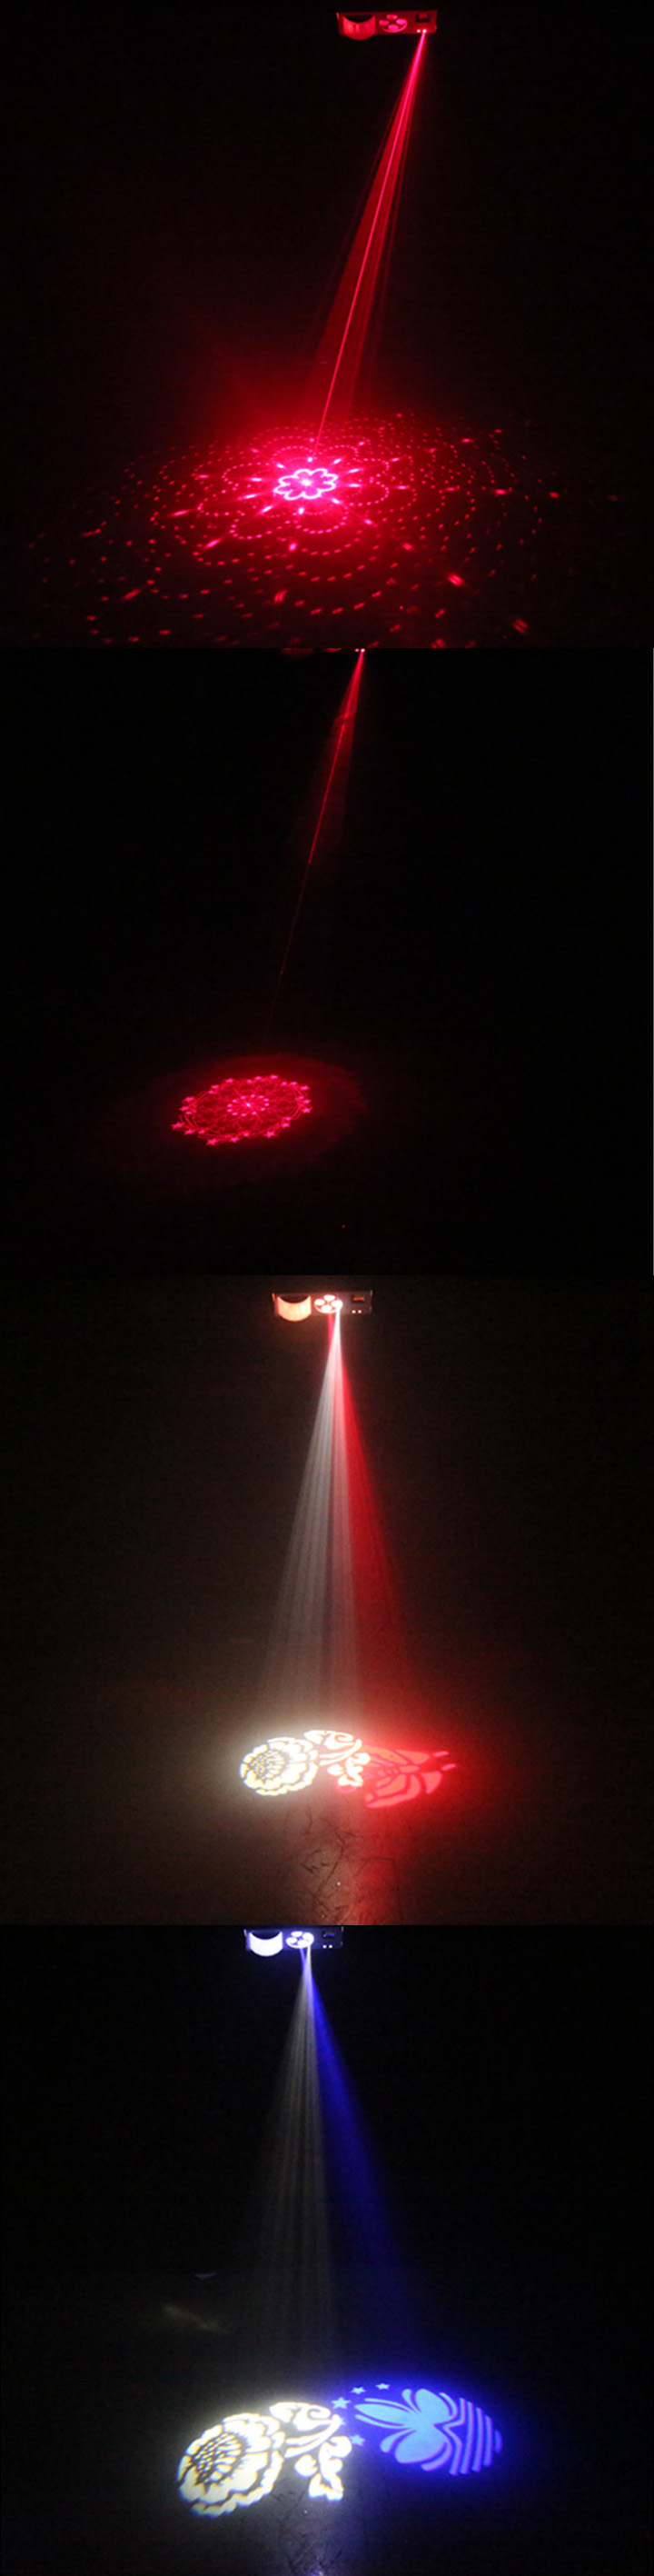 kopen laser projector